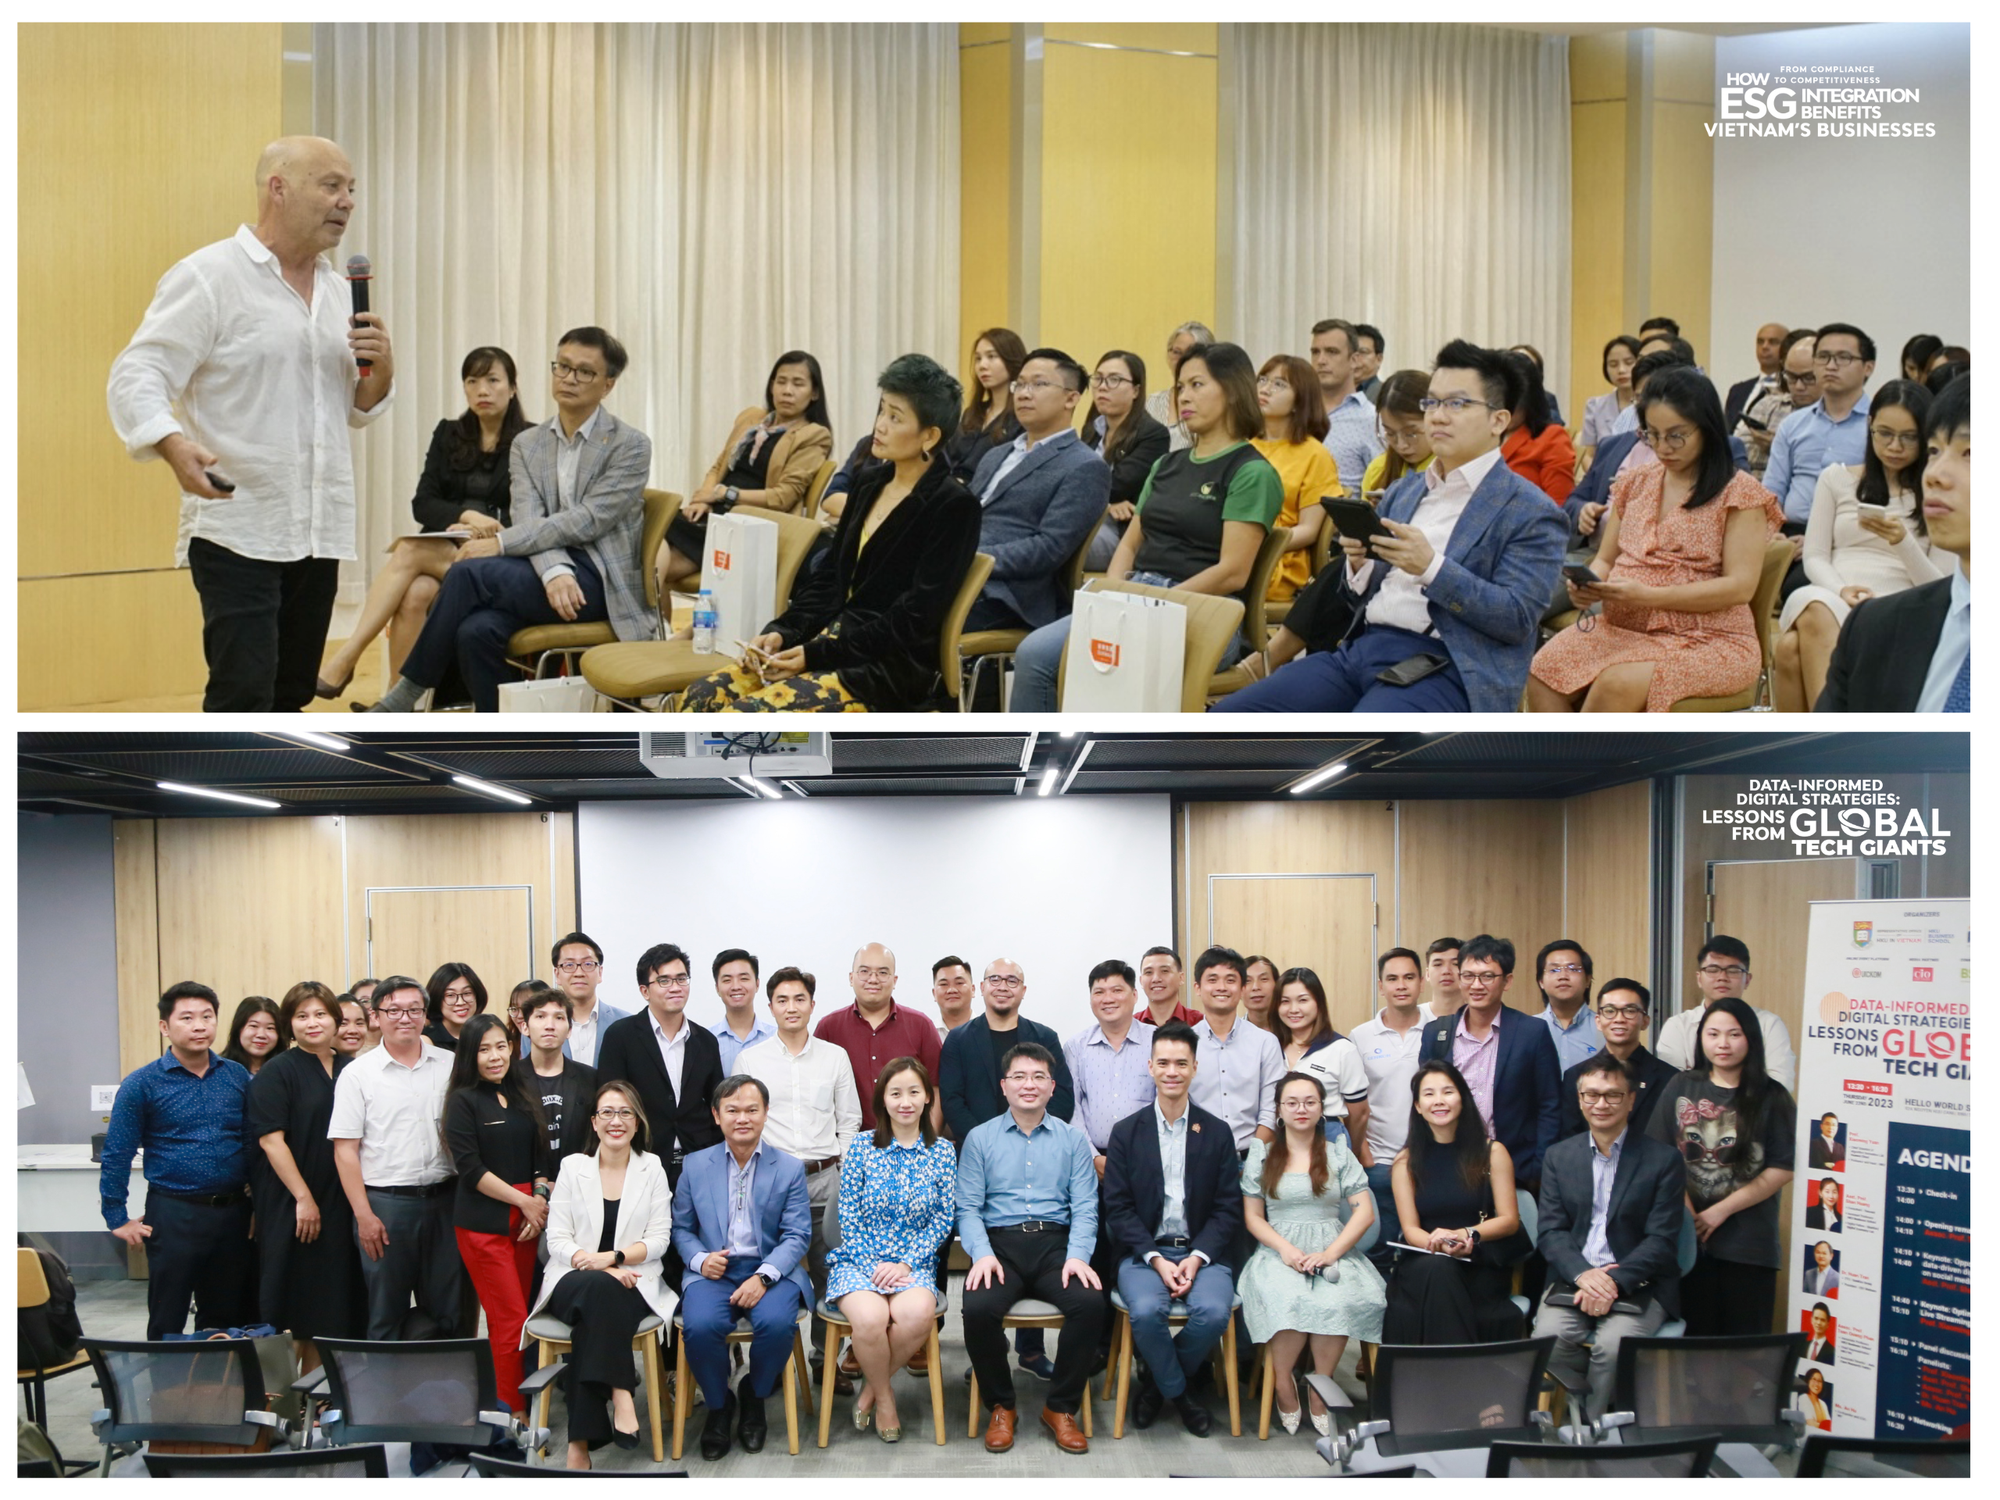 Đại học Hong Kong trao học bổng, thúc đẩy khởi nghiệp Việt Nam - Ảnh 4.